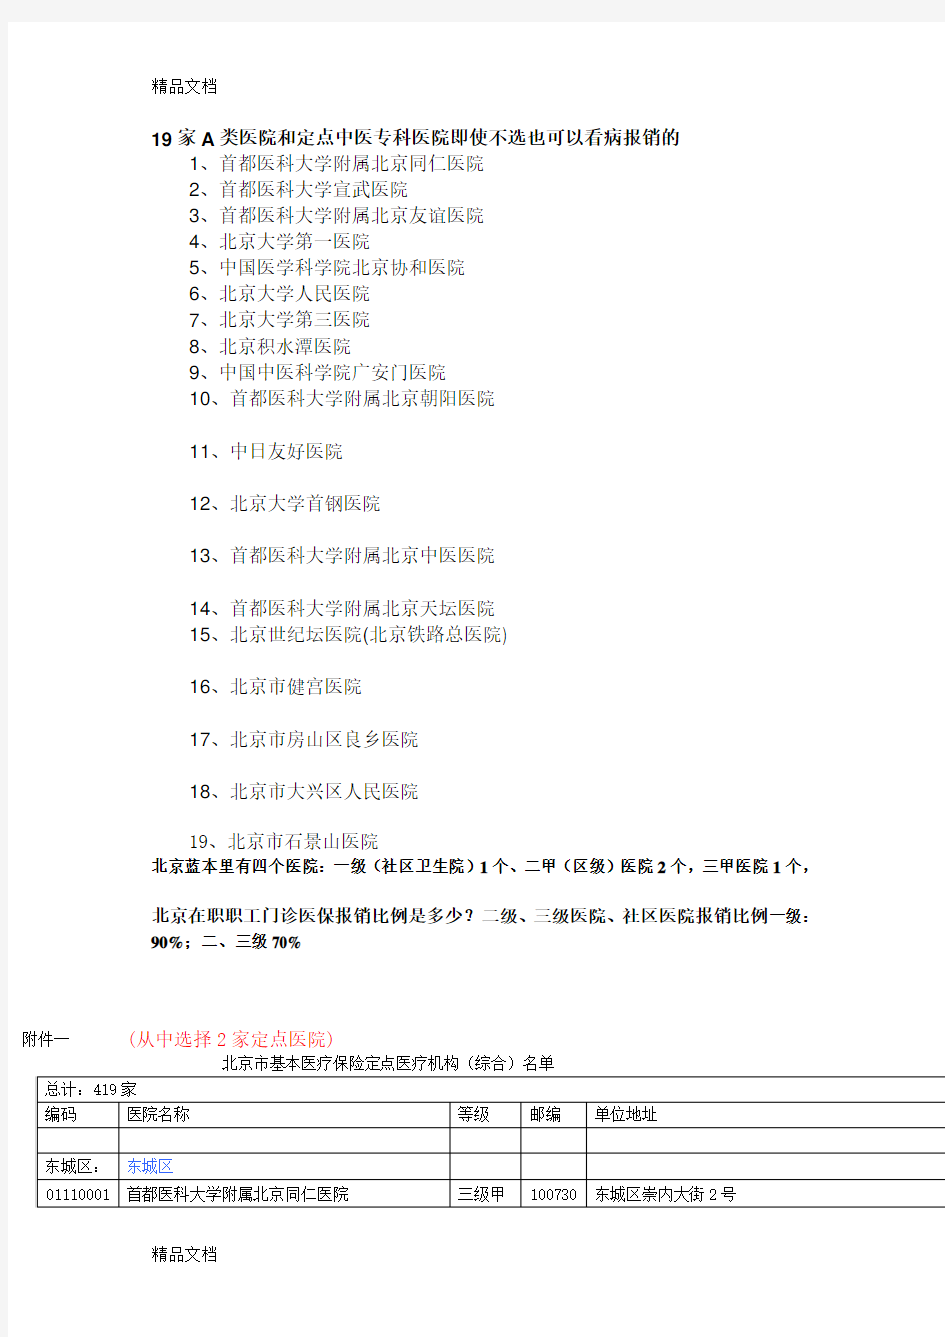 (整理)北京市共有19家A类医院.